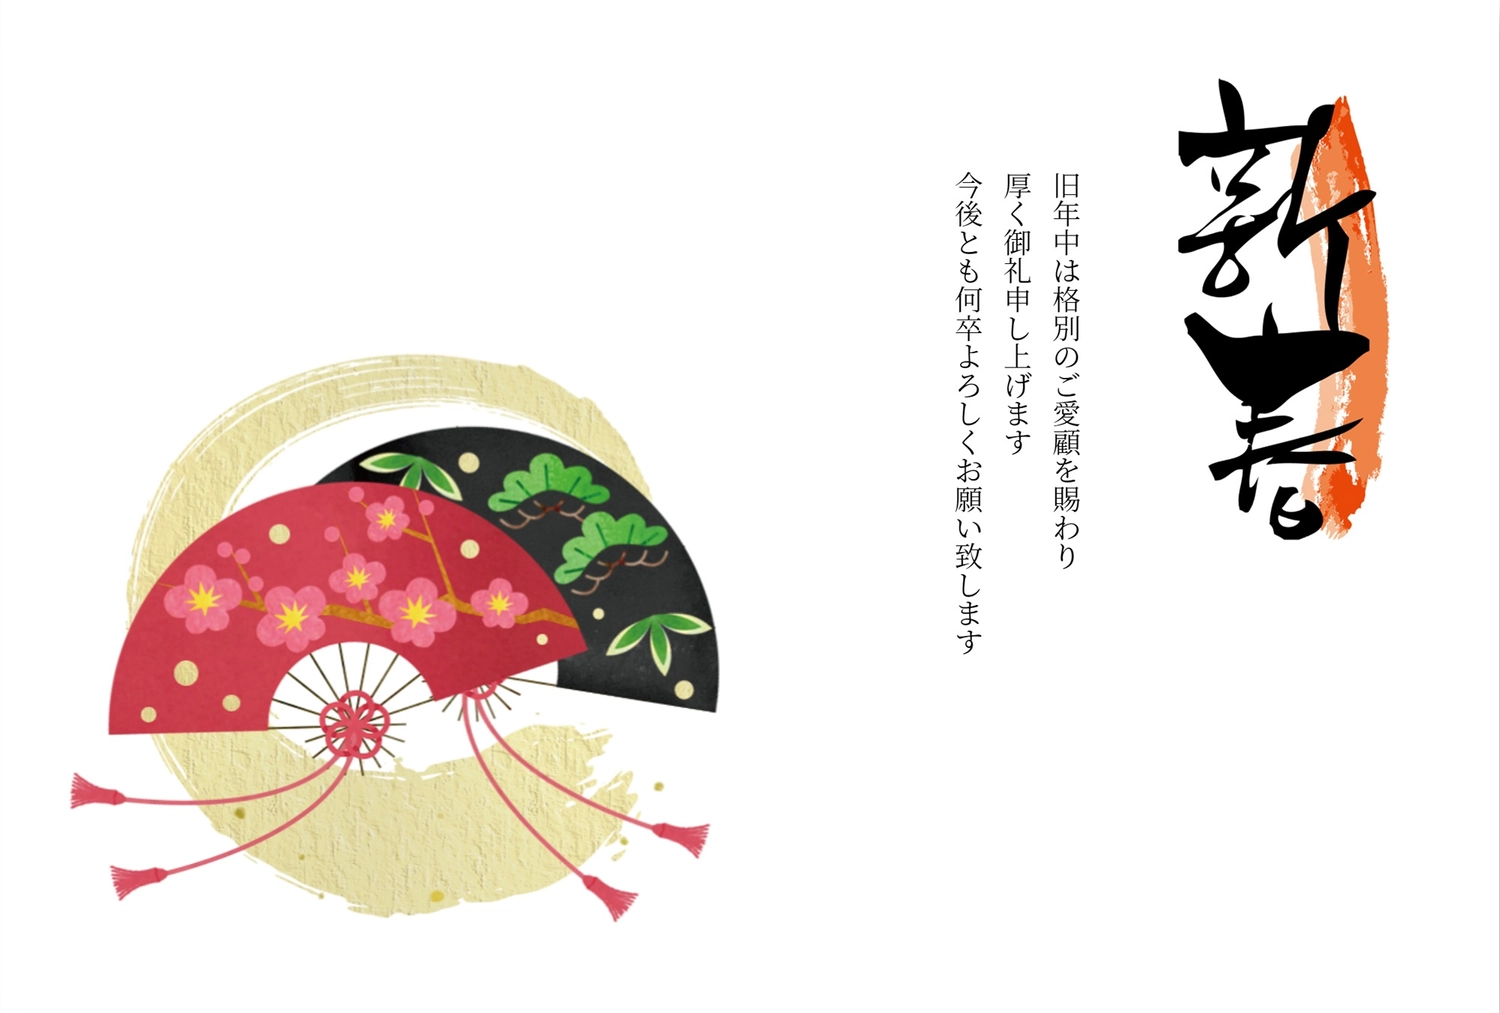 扇子の年賀状, margin, written form, Vertical writing, New Year Card template